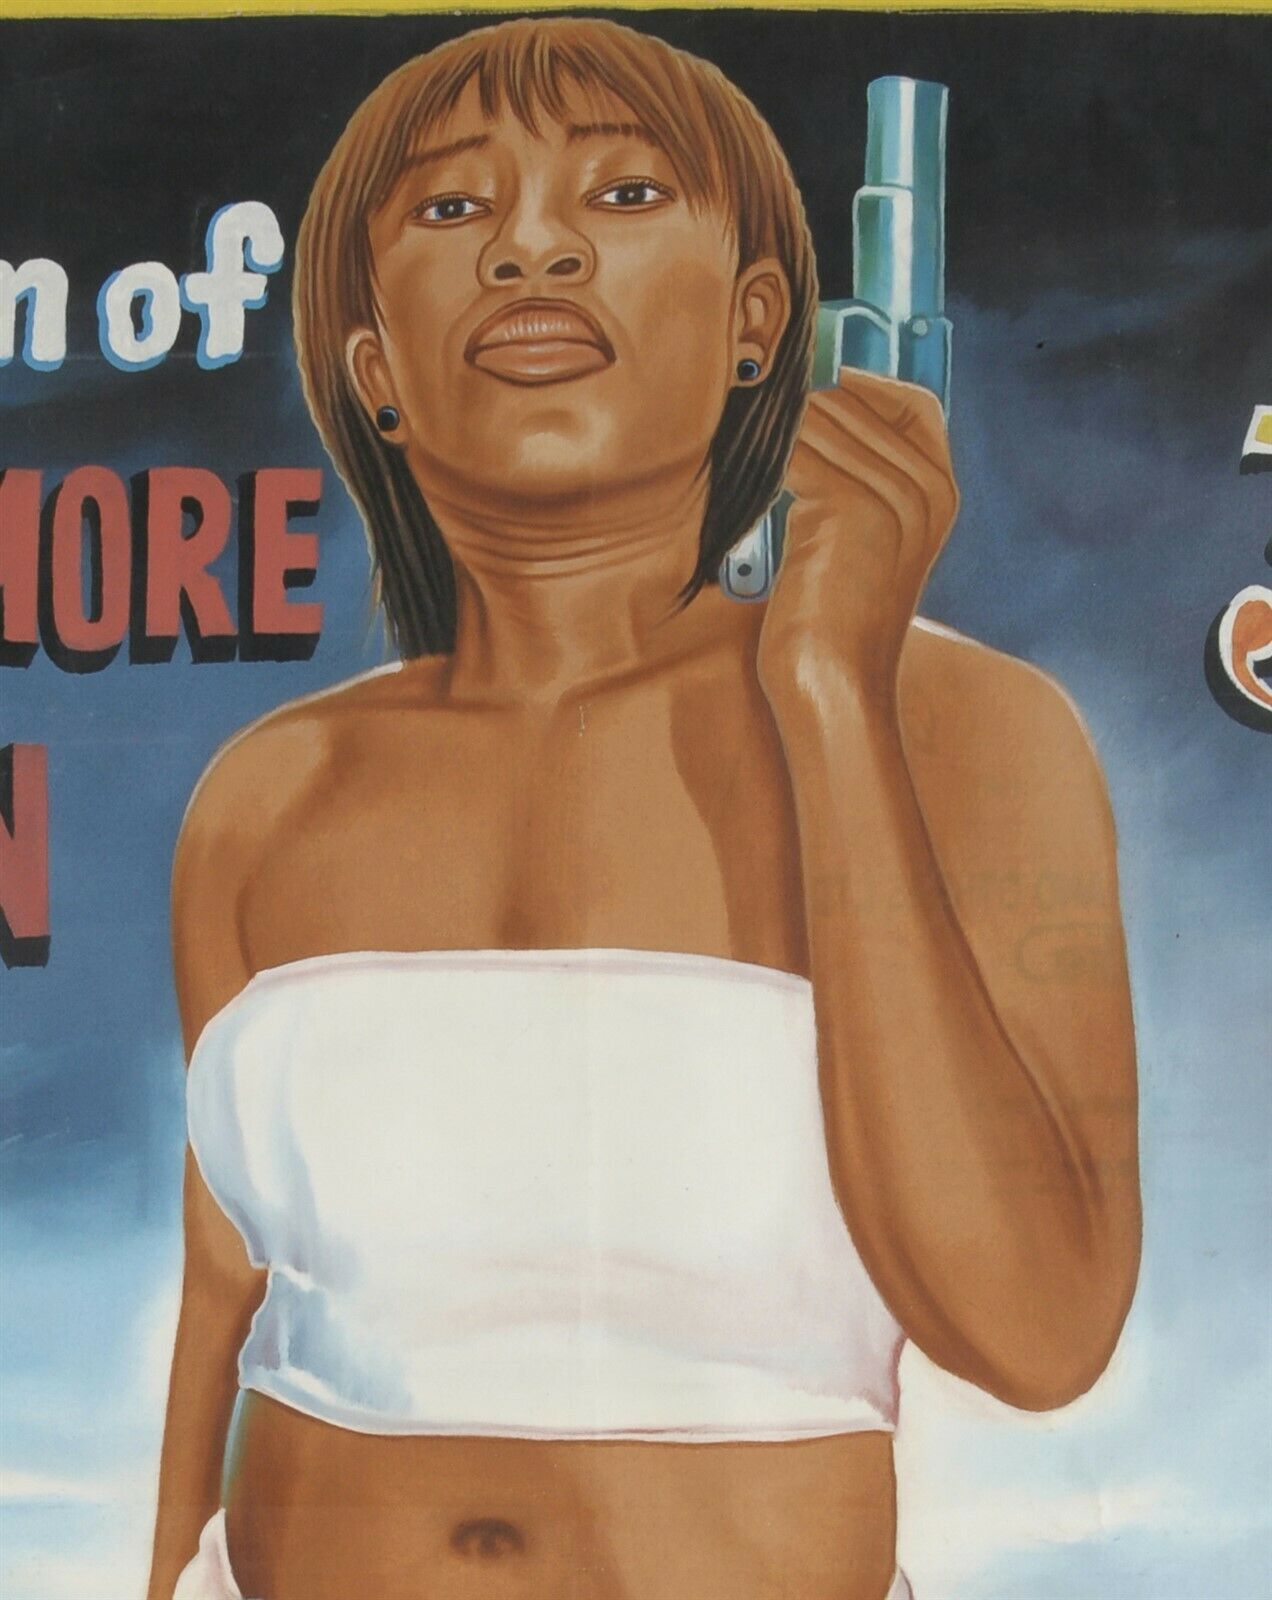 Γκάνα Χειροποίητη αφίσα ταινίας Αφρικανικός κινηματογράφος Art JUJU RETURN OF ONE MORE MAN 3 - Tribalgh